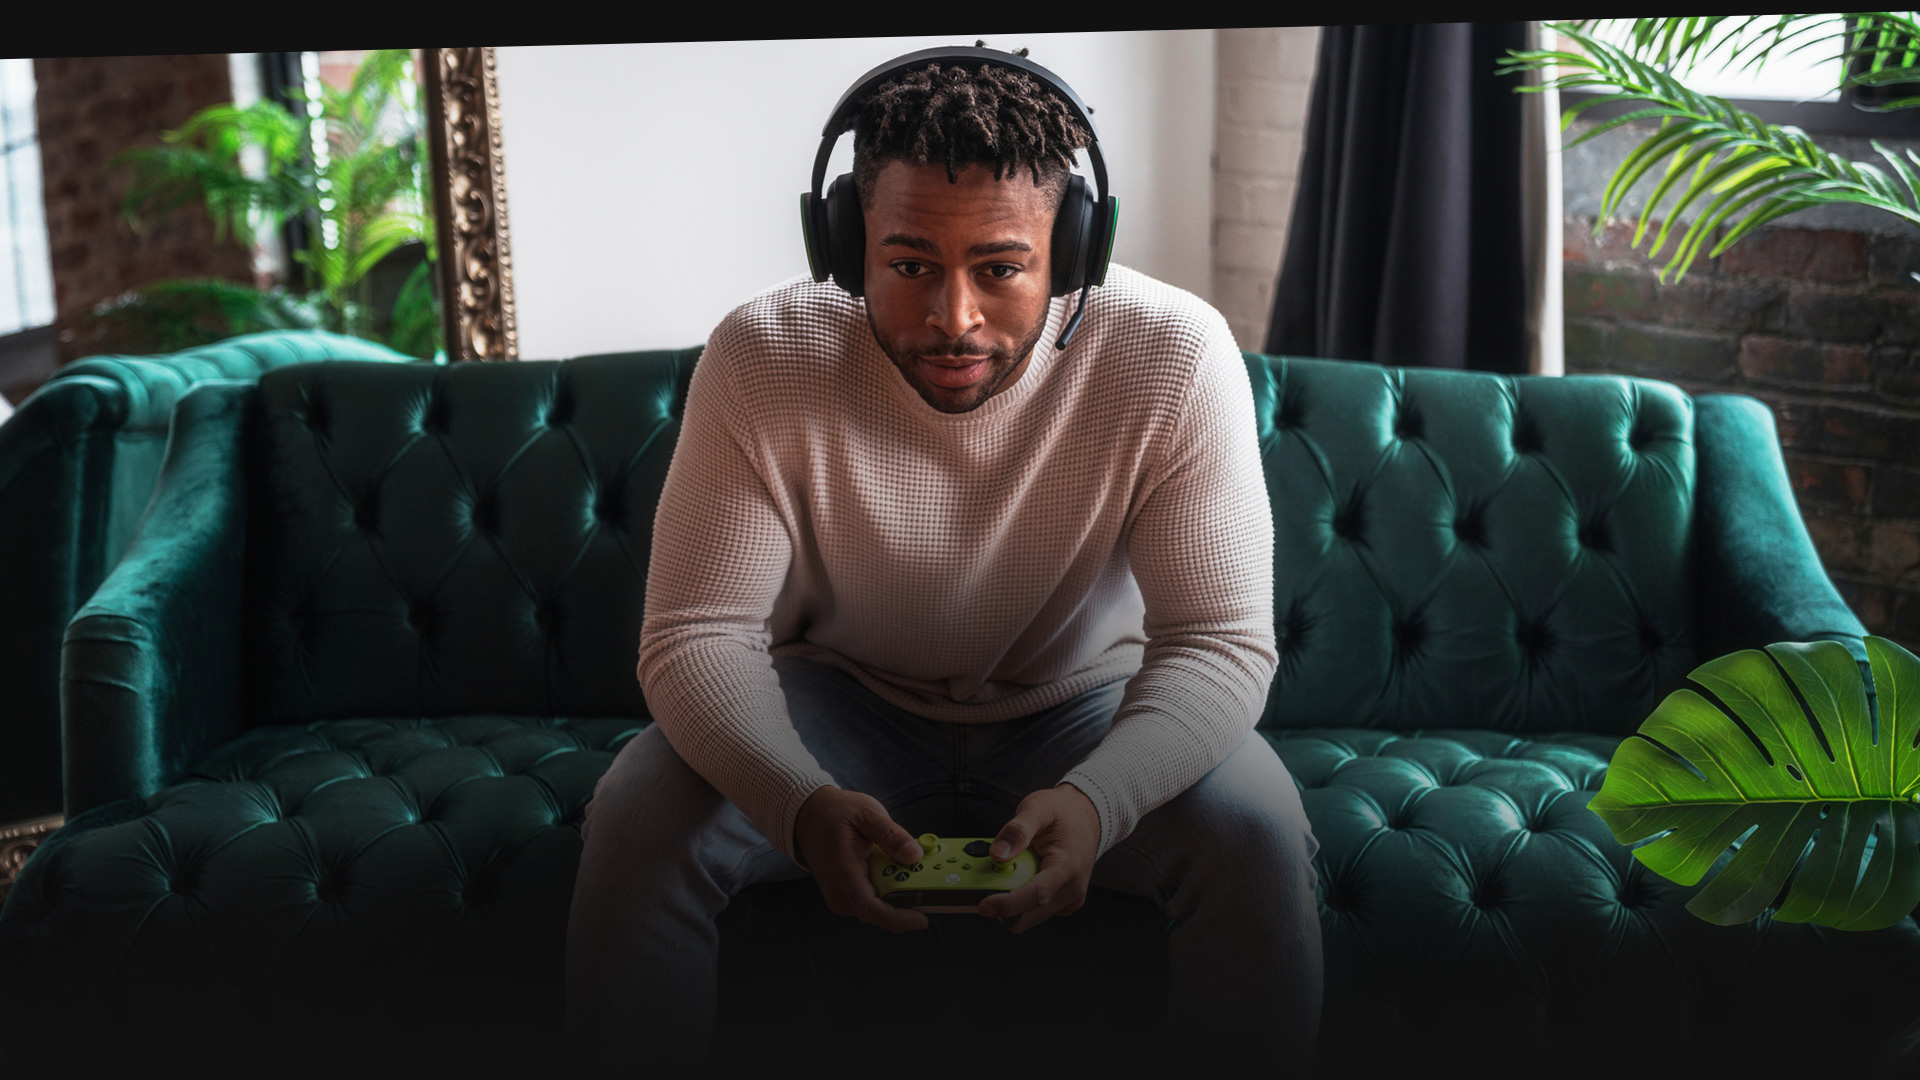 Egy személy headsetet visel és Xboxszal játszik egy kanapén.